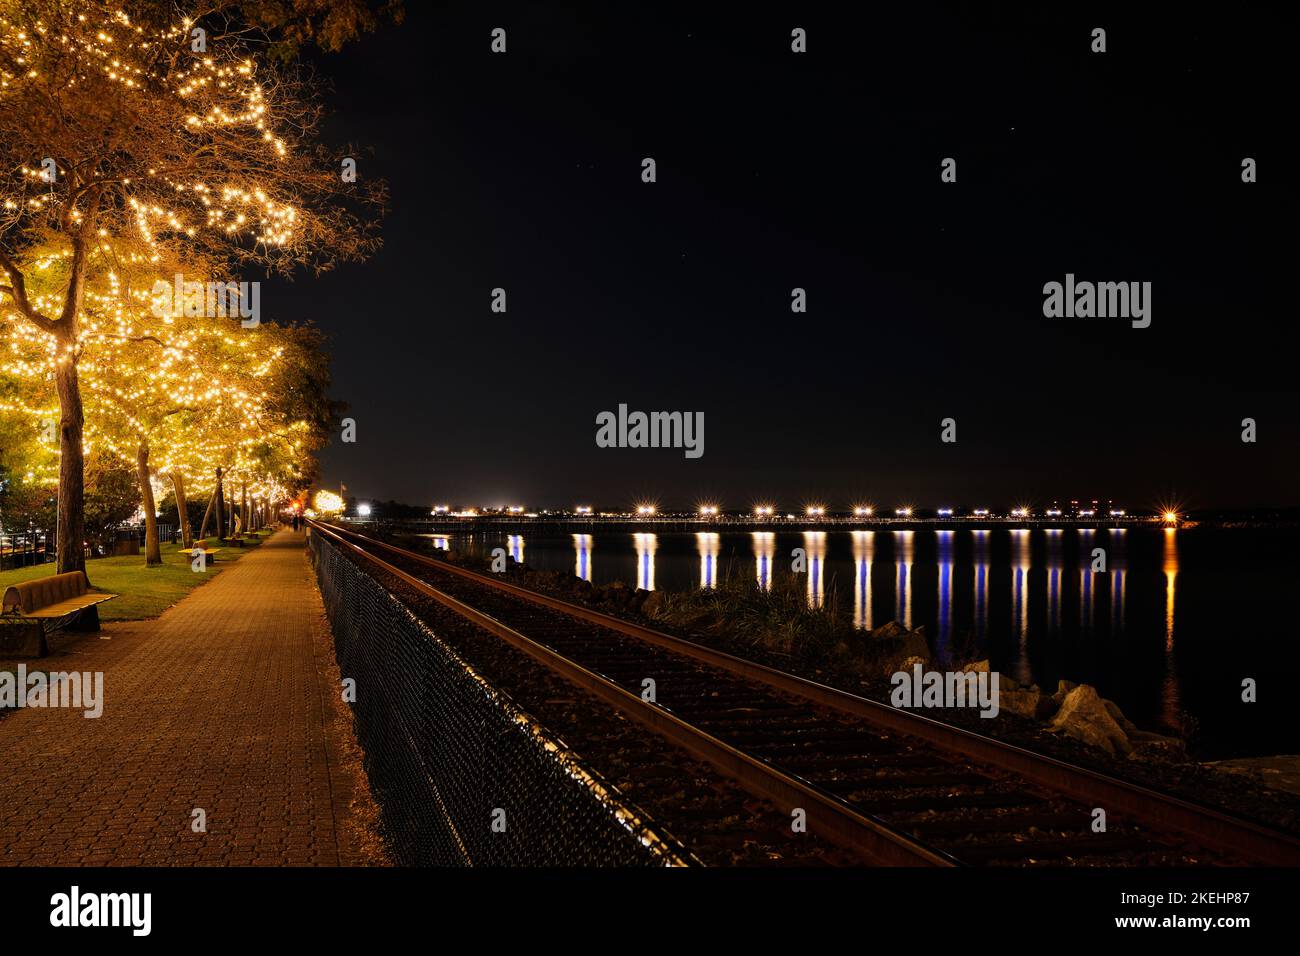 Winterabend am Ufer des White Rock. Farbenfrohe Lichter am Pier bilden Starbursts und hübsche Lichter an den Bäumen sorgen für Glanz. Stockfoto